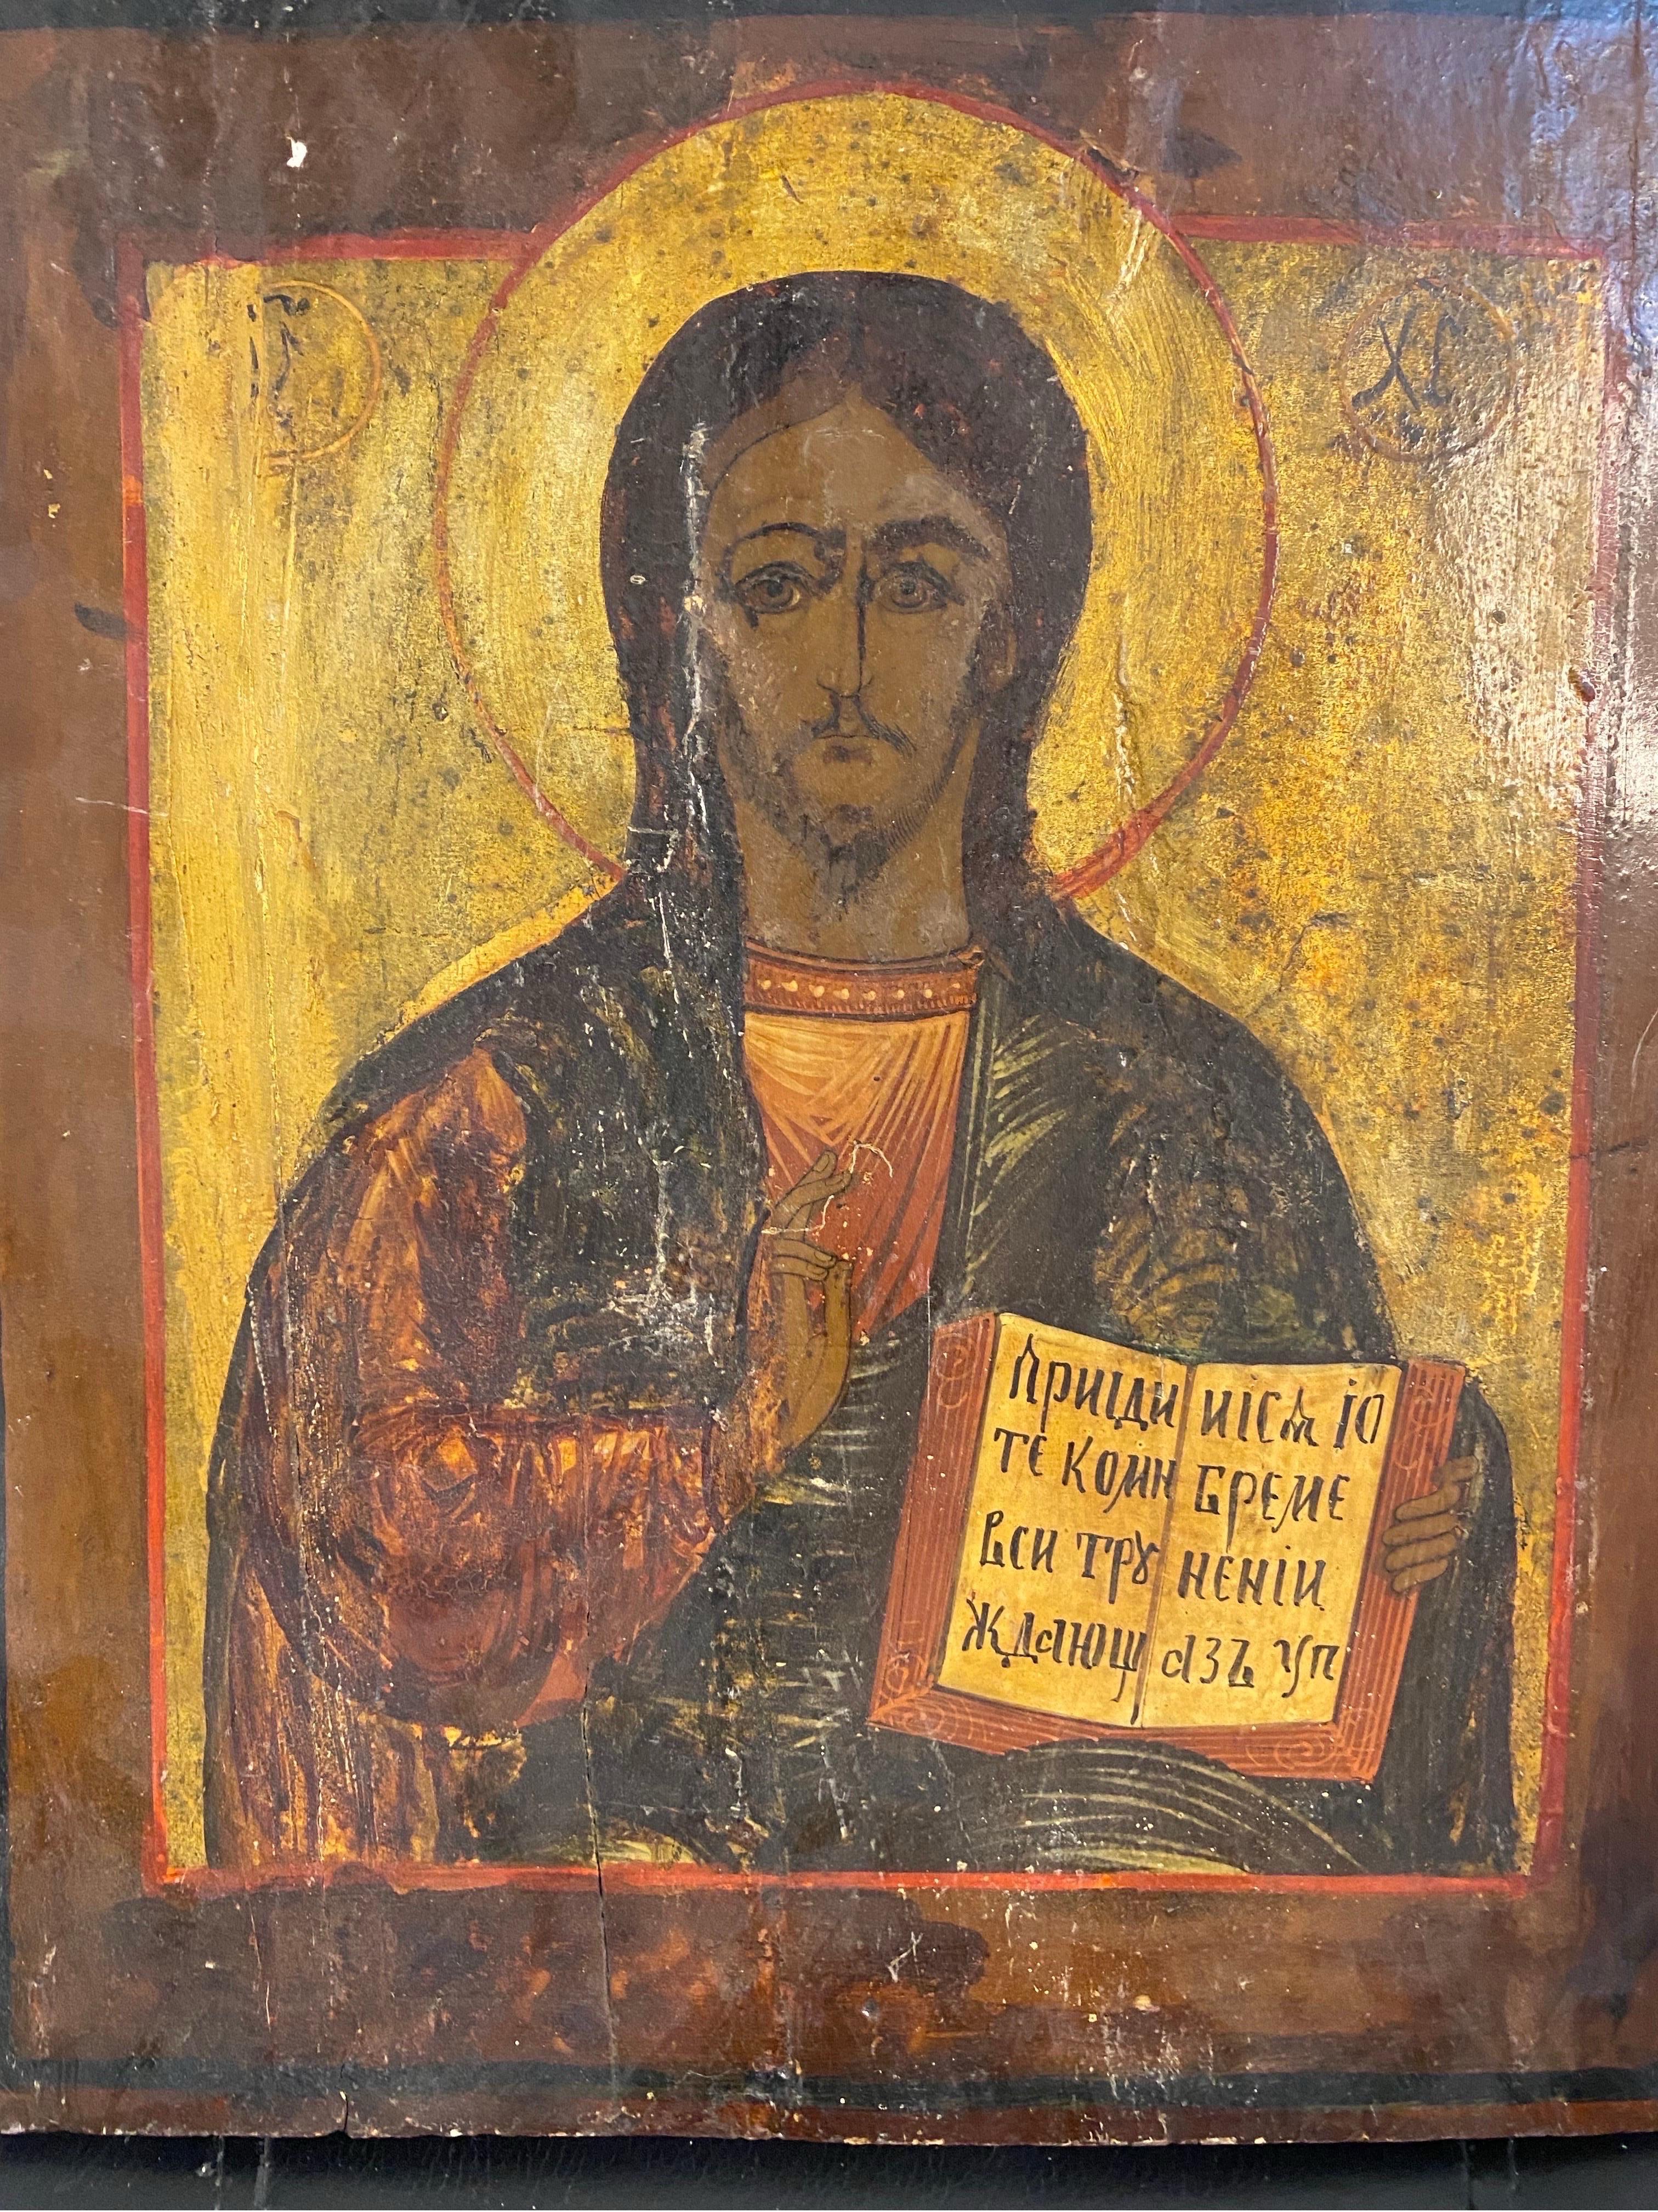 Ce morceau d'icône représente un prêtre tenant un livre saint. 
Cette pièce est réalisée en bois et contient des dessins faits à la main. 

19ème siècle 